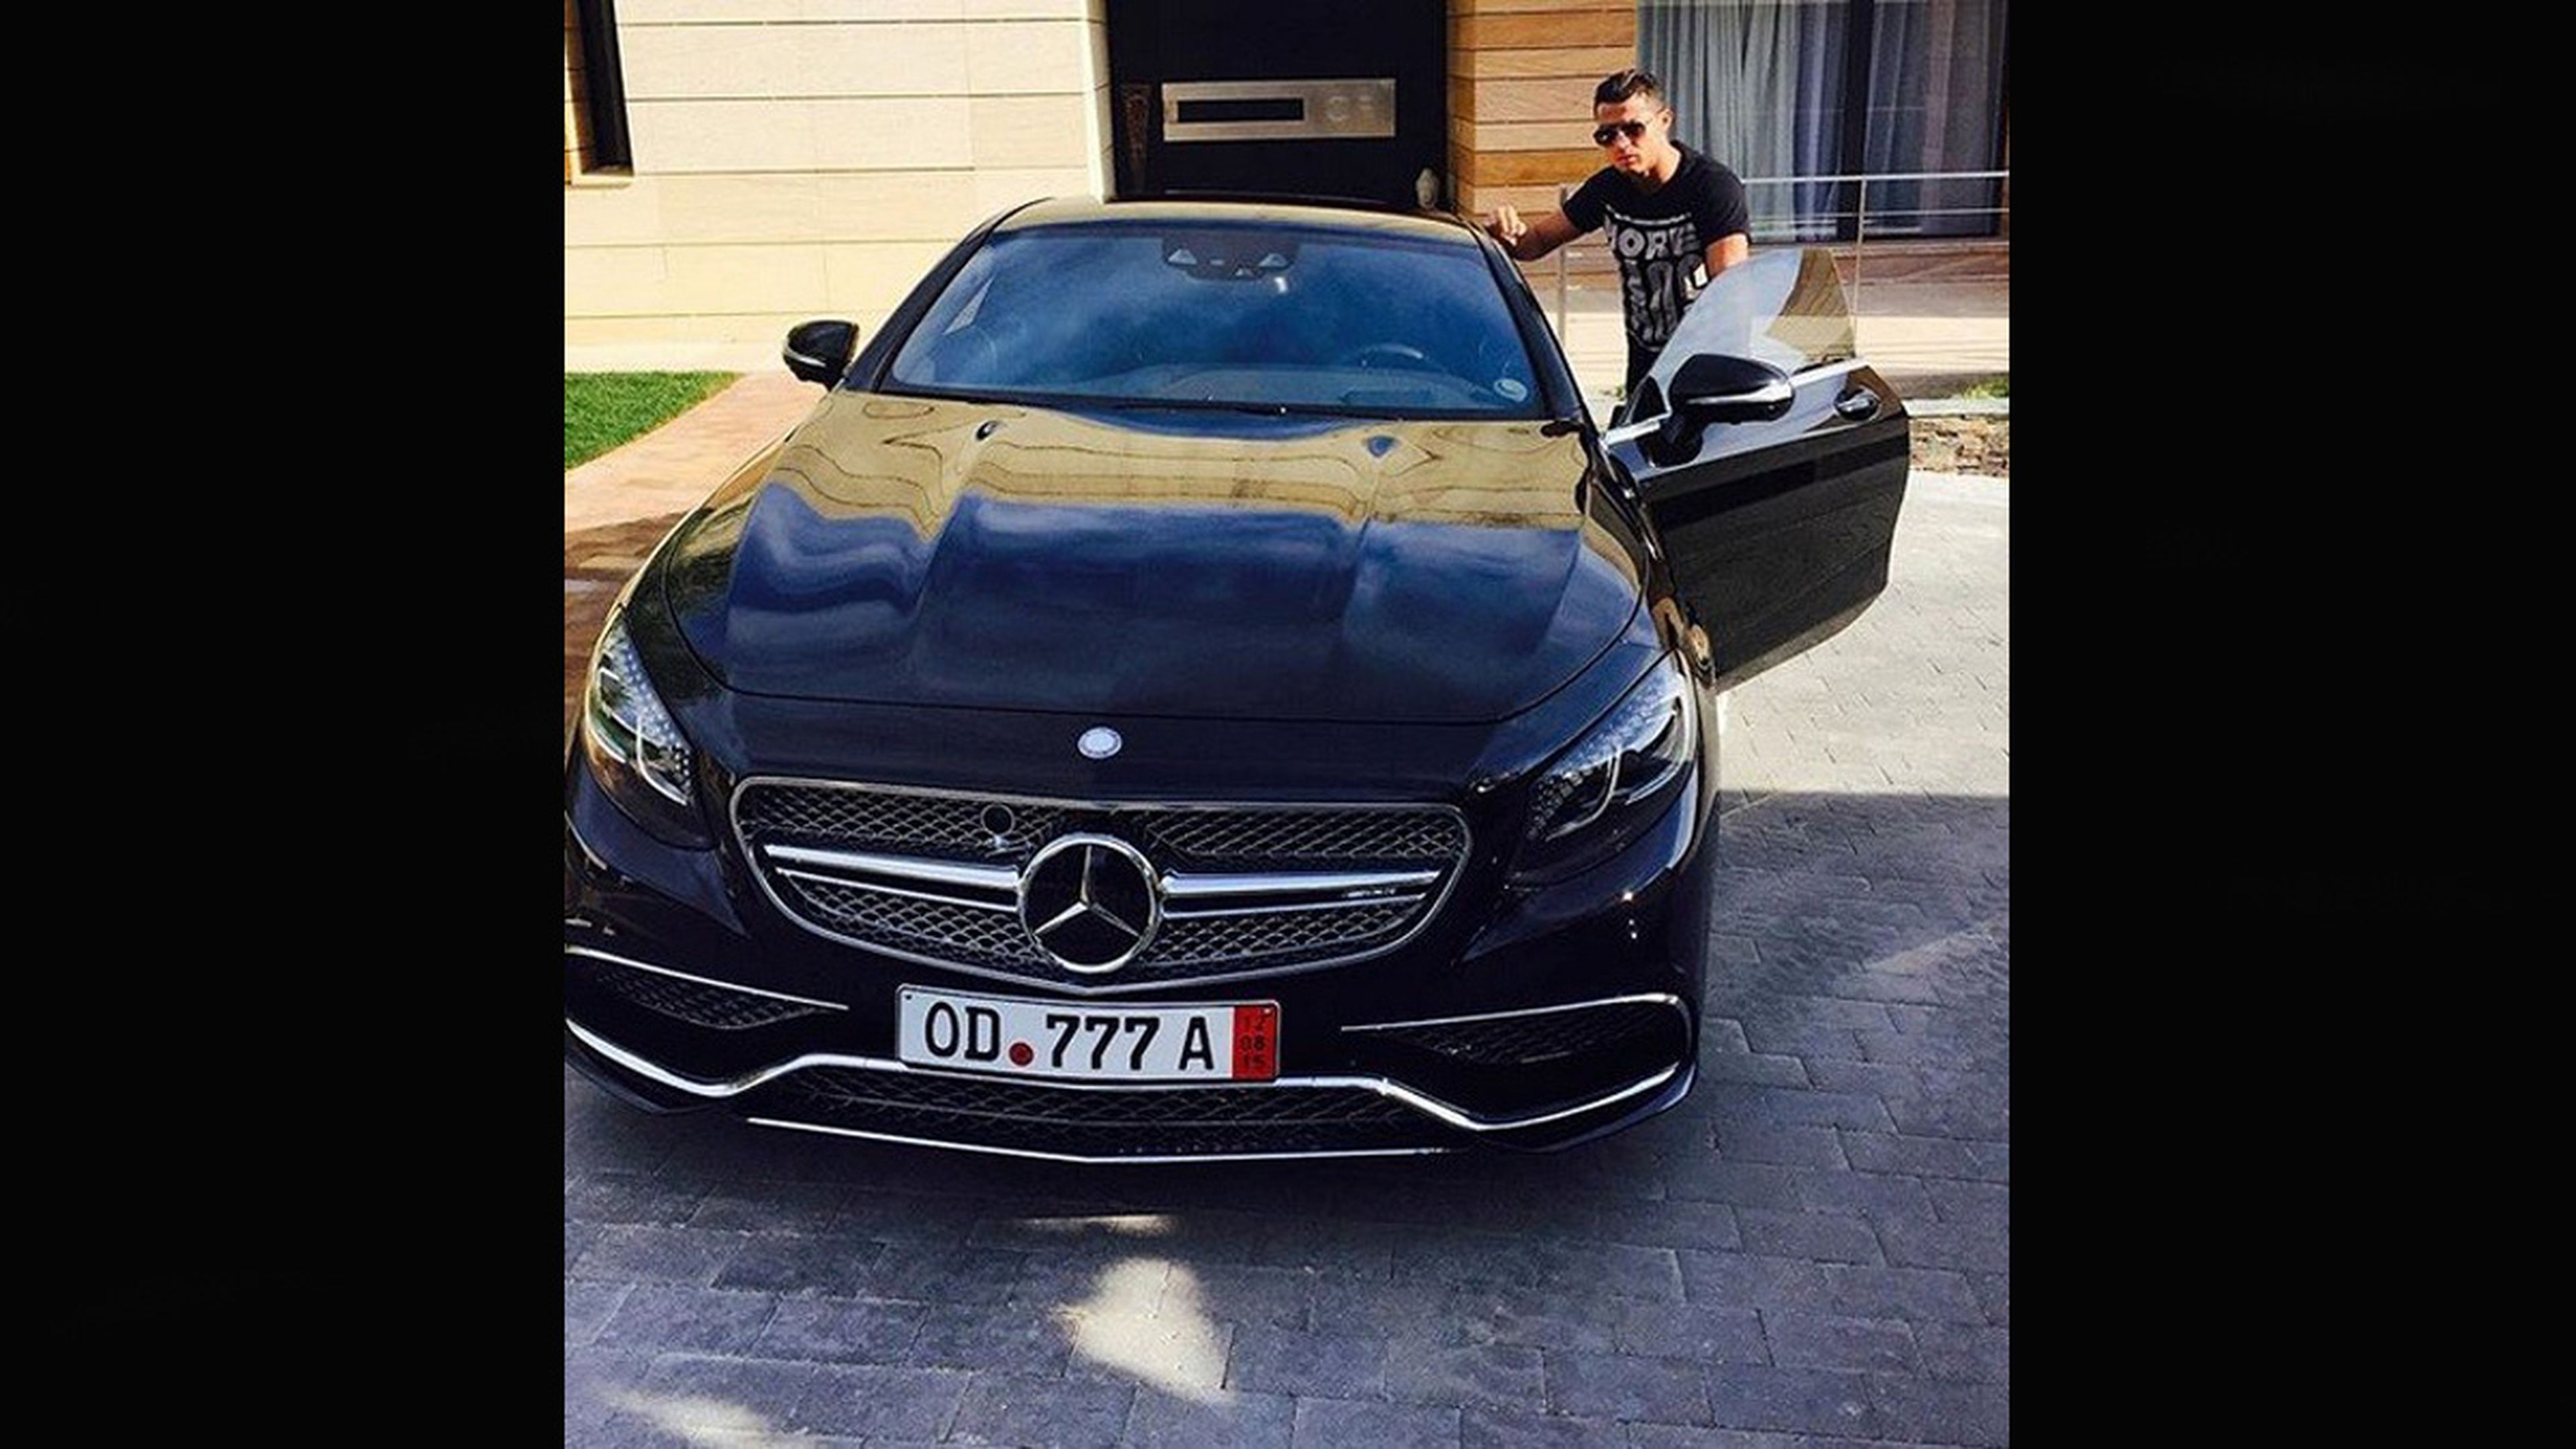 Cristiano Ronaldo estrena coche: Mercedes S 65 AMG Coupé